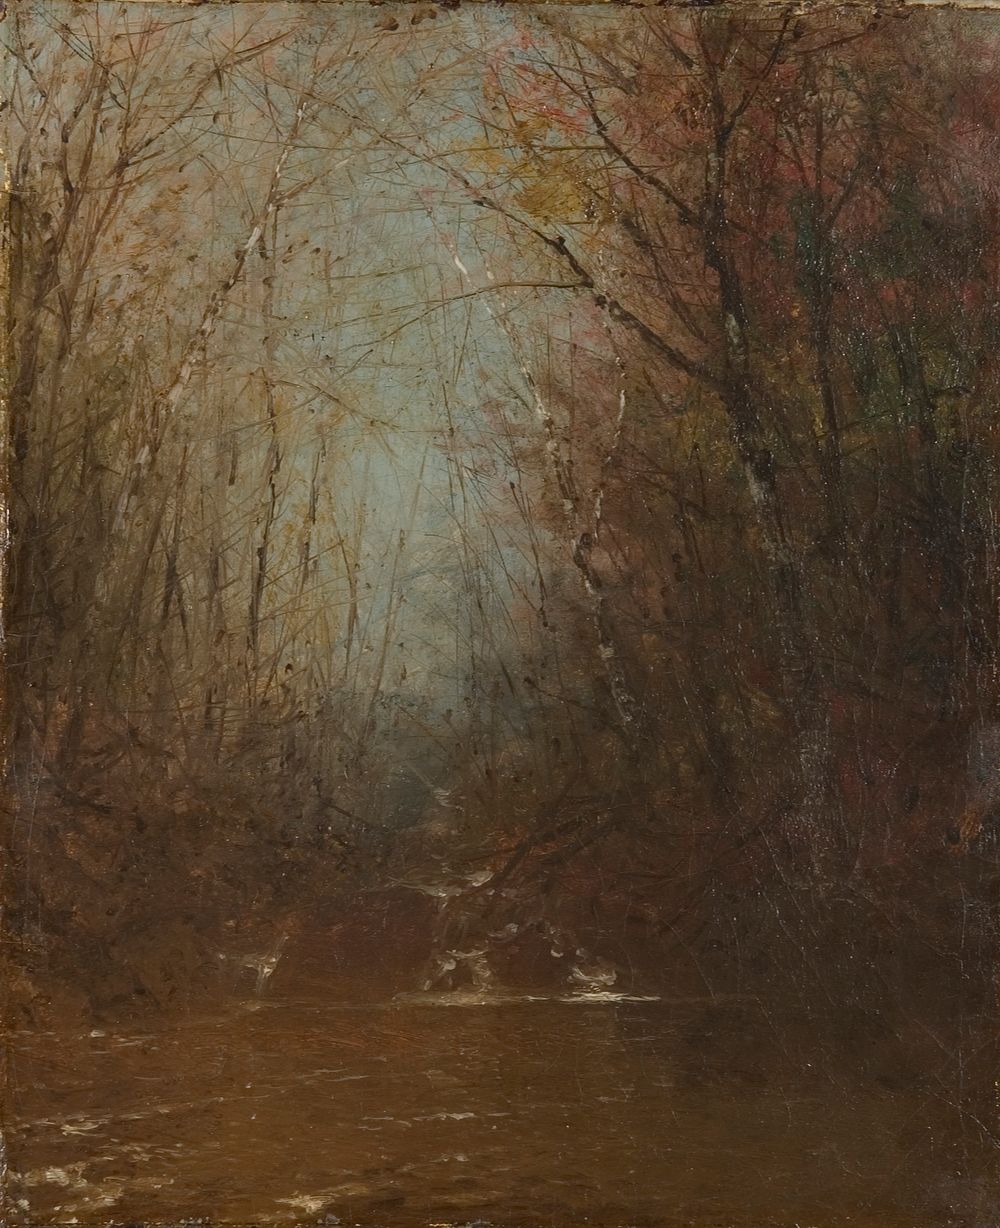 Forest Interior with Stream, John Frederick Kensett